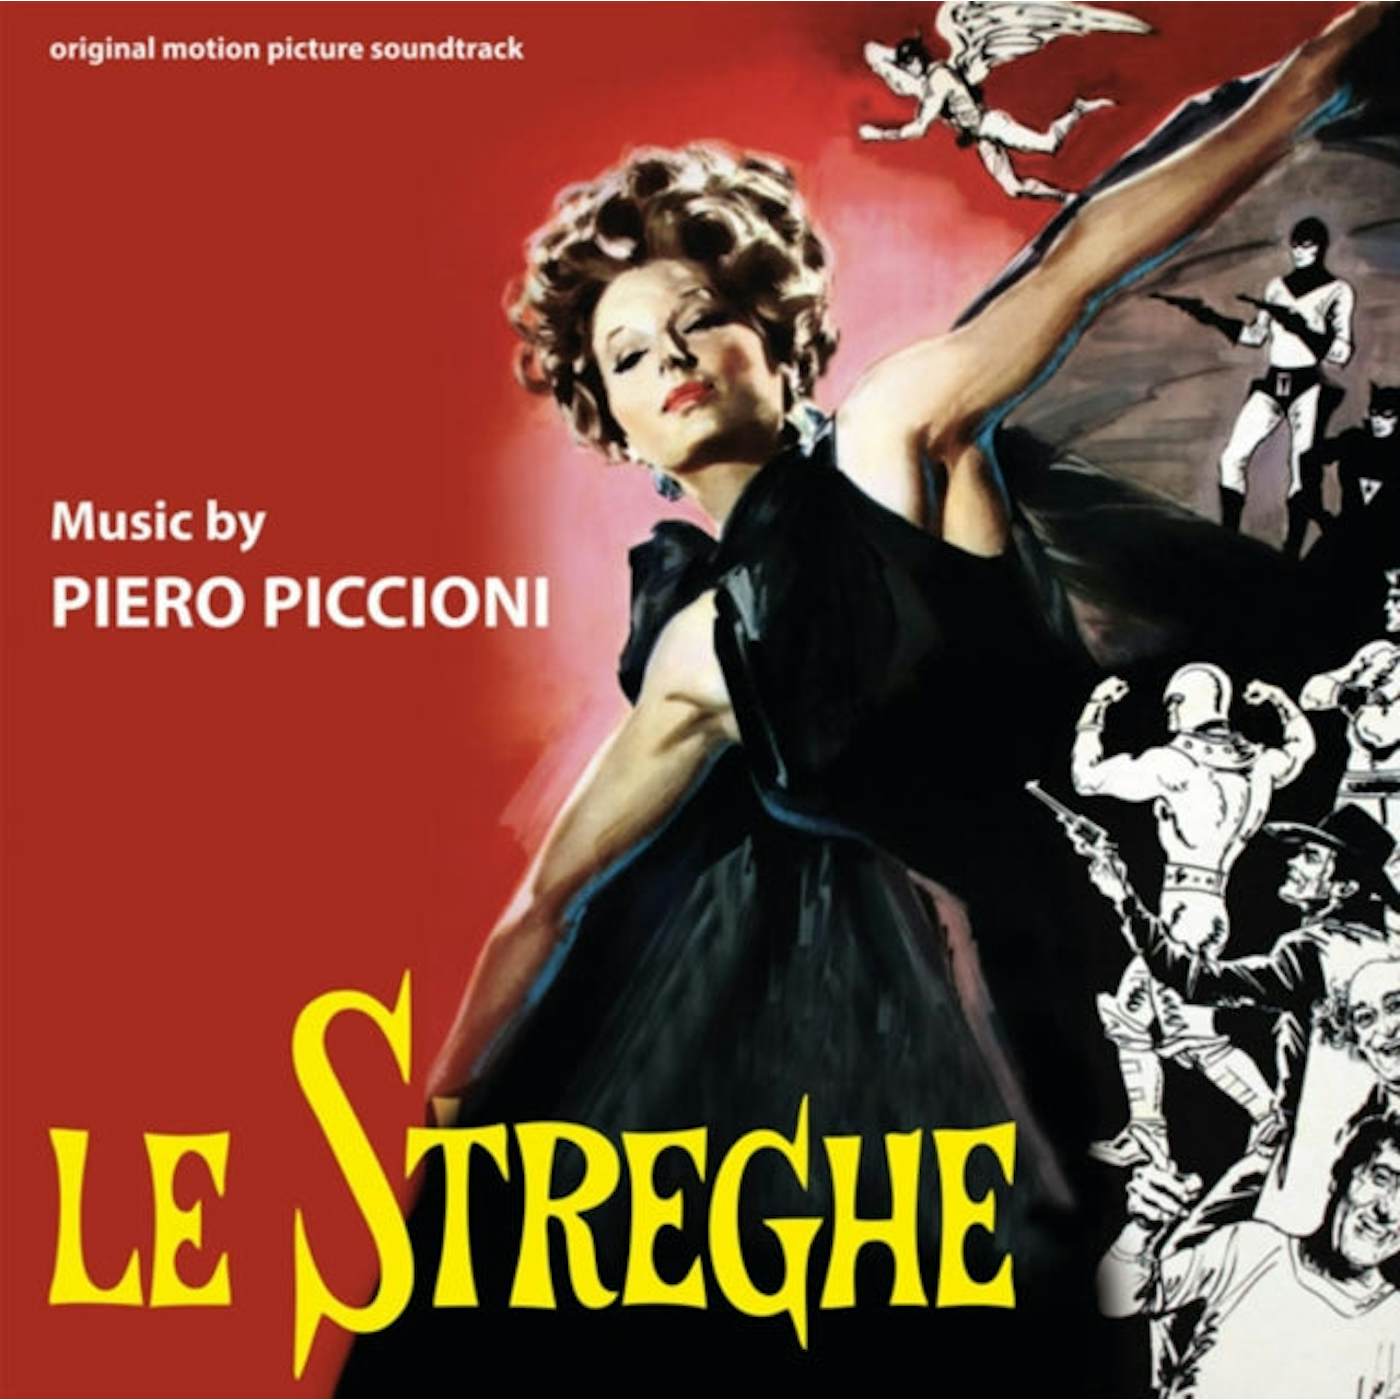 Piero Piccioni LP - Le Streghe (Vinyl)